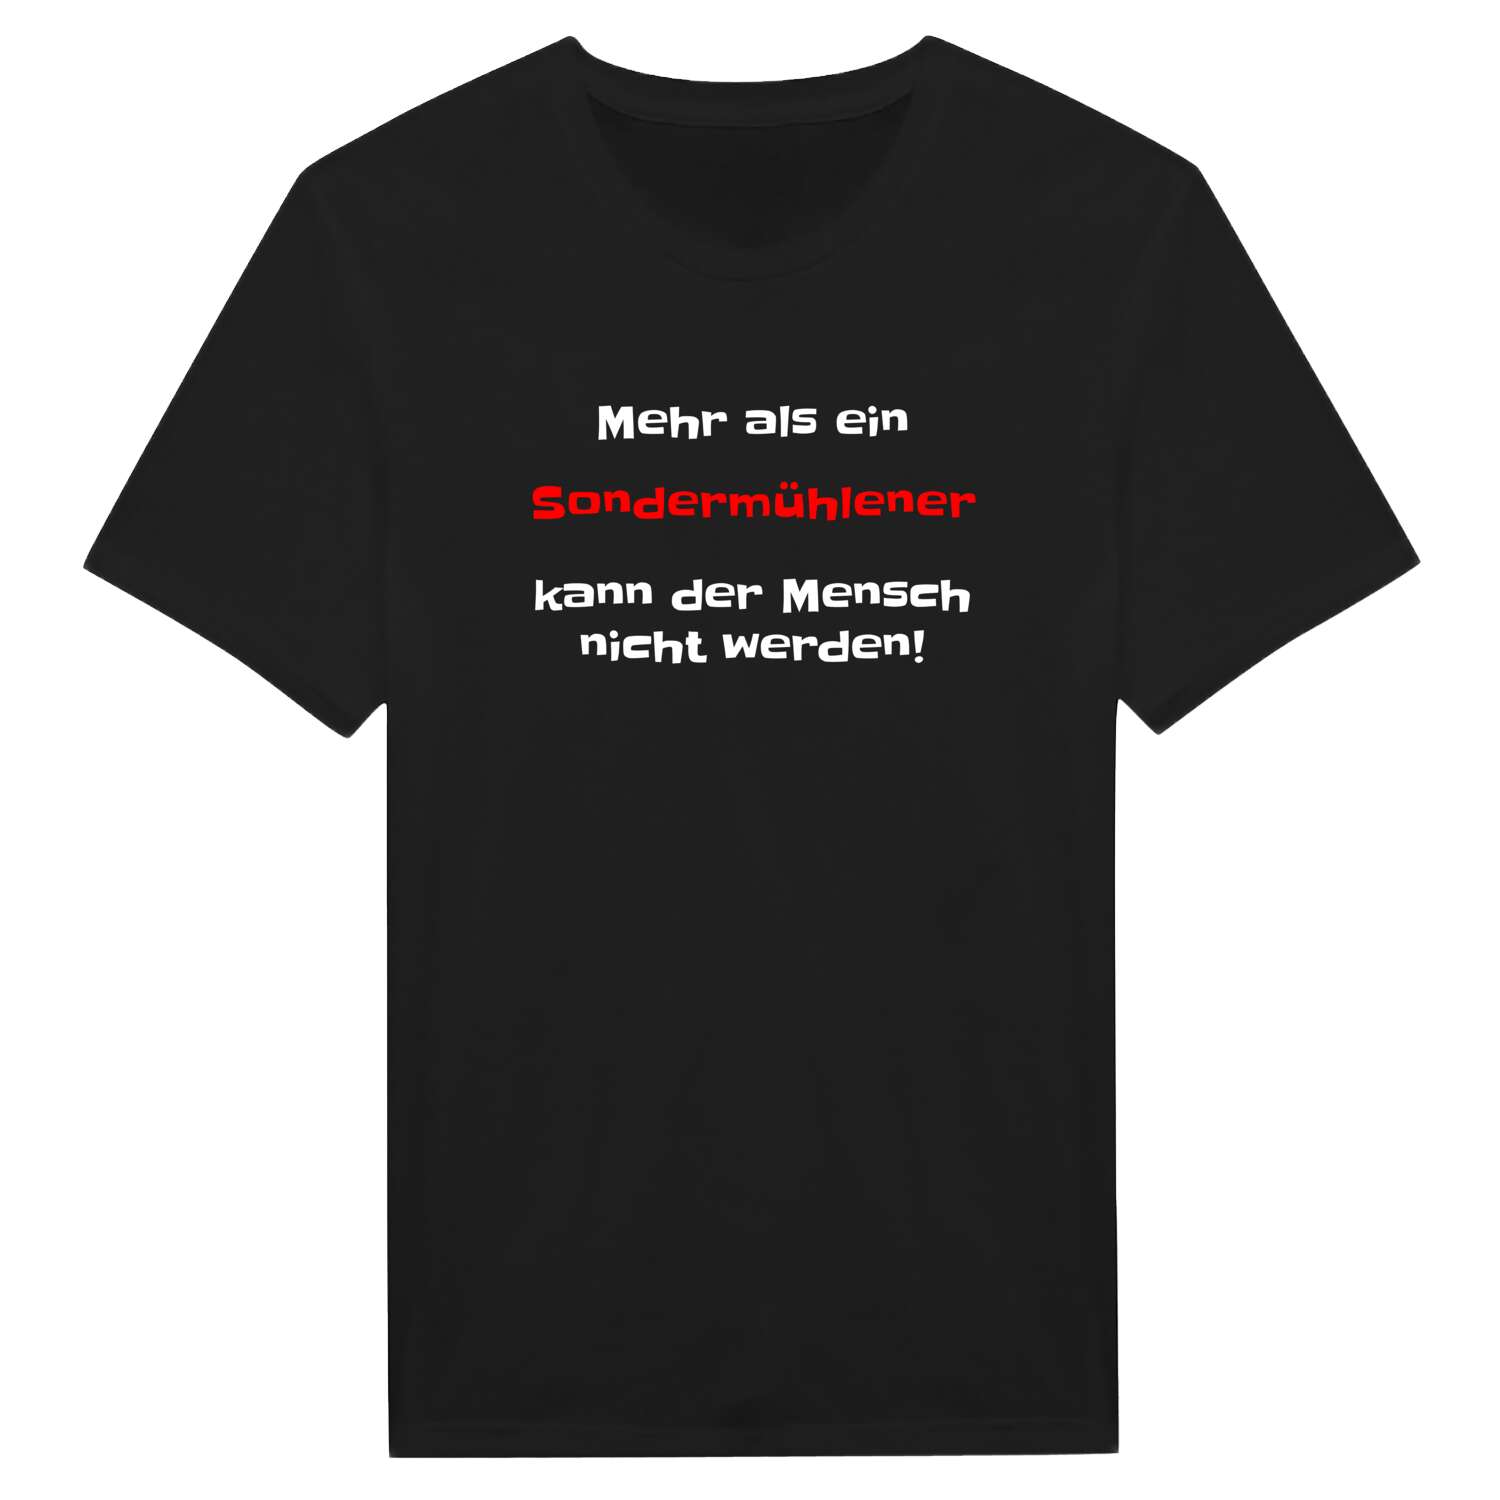 Sondermühlen T-Shirt »Mehr als ein«